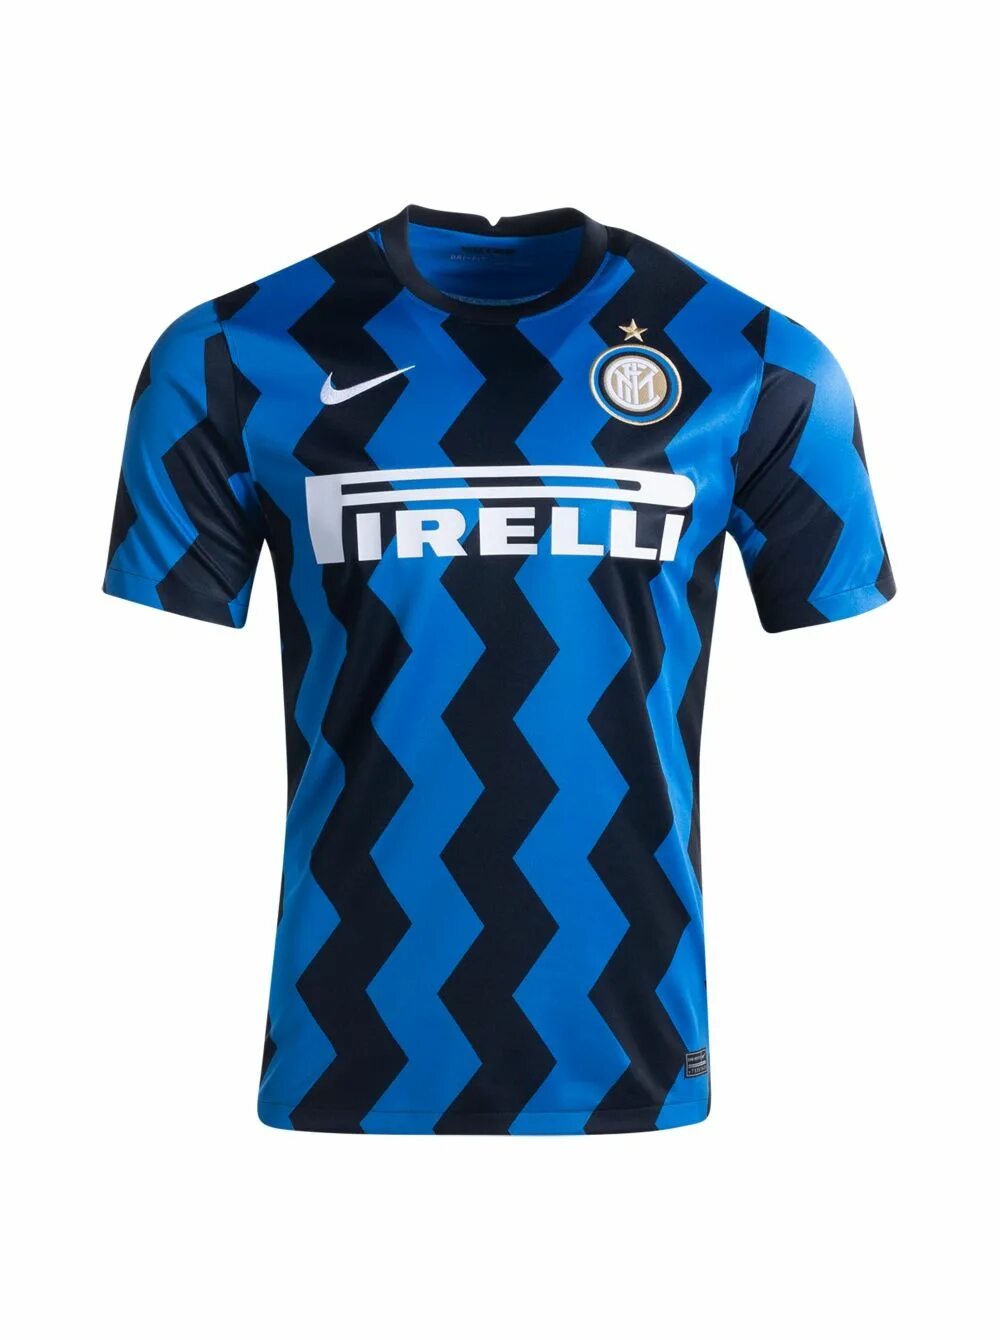 Купить футболку inter. Интер форма 2021 2022.